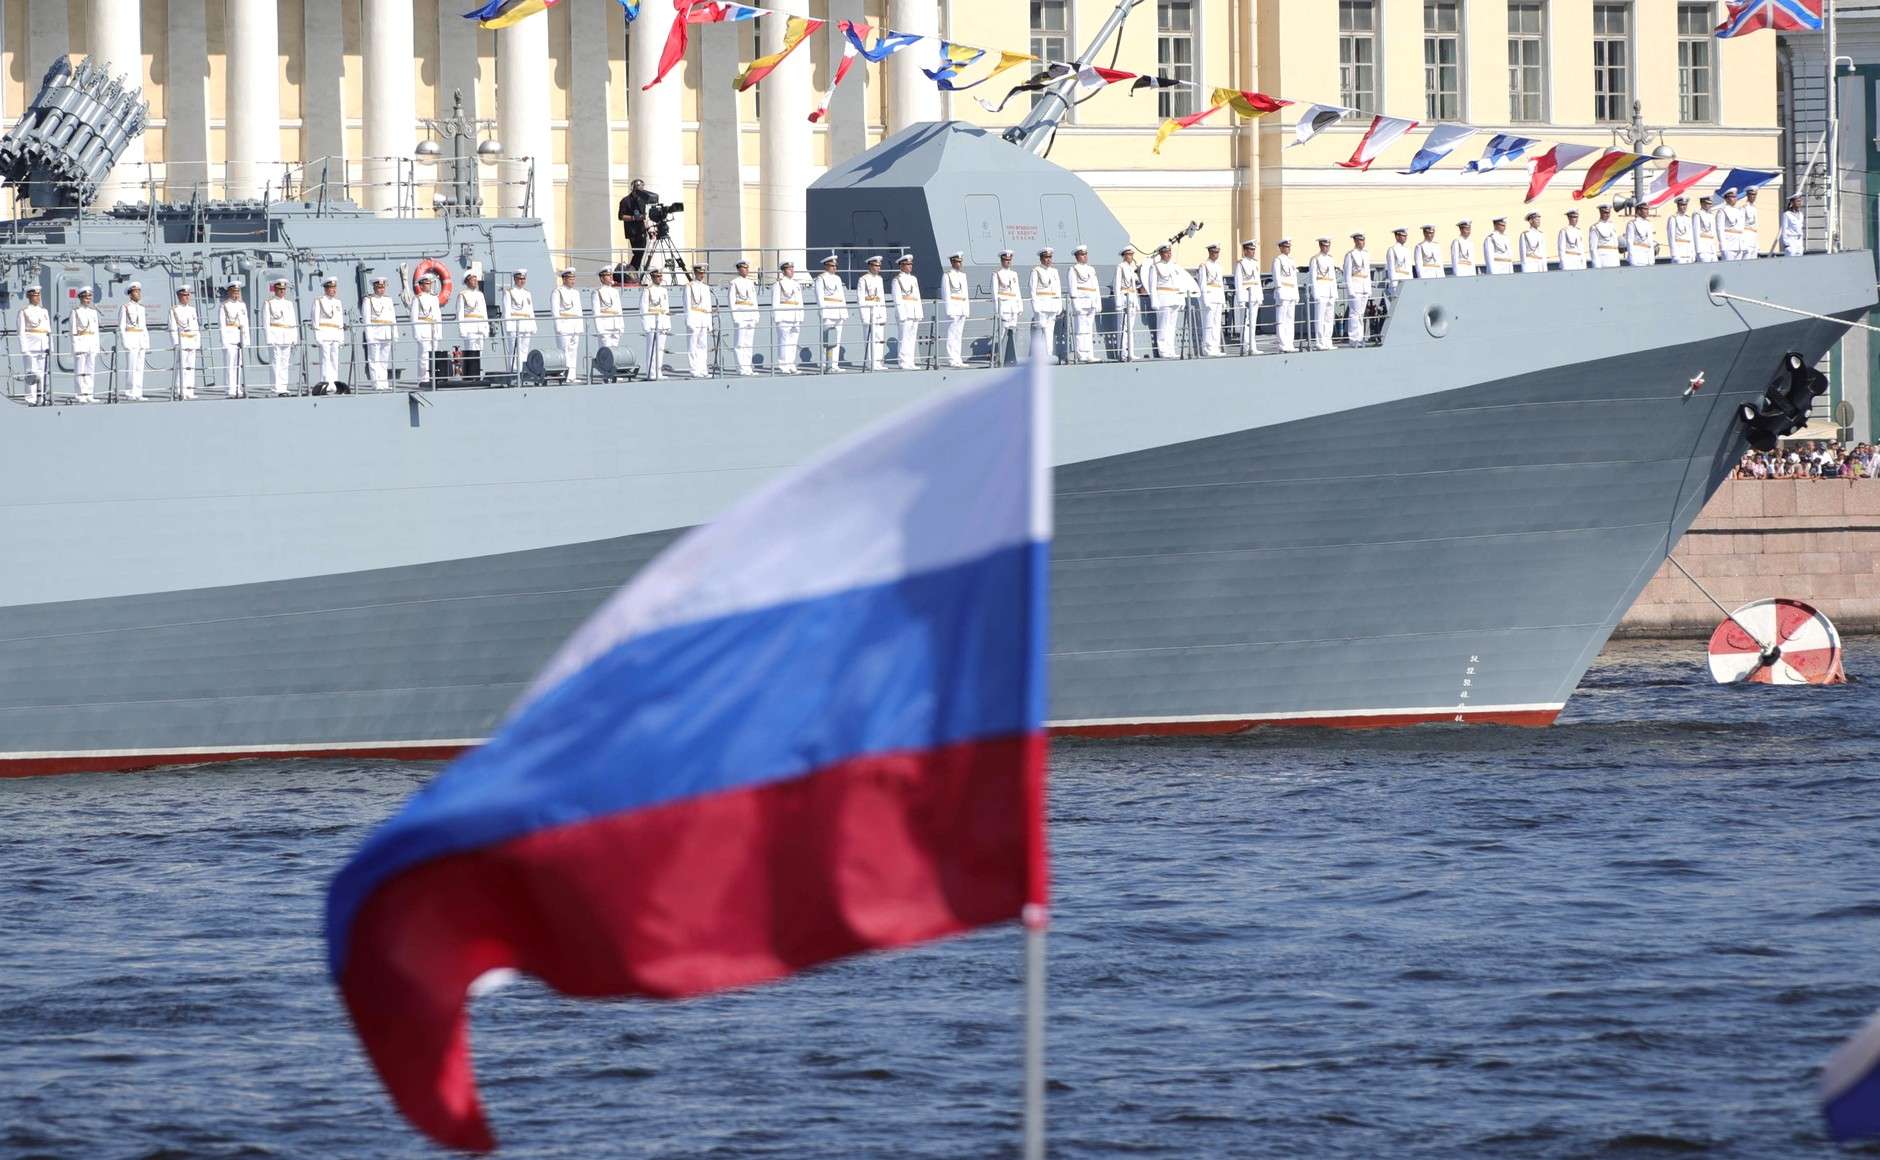 Οι Ιταλοί ανησυχούν για την «επιθετική στάση του ναυτικού της Ρωσίας» στη Μεσόγειο